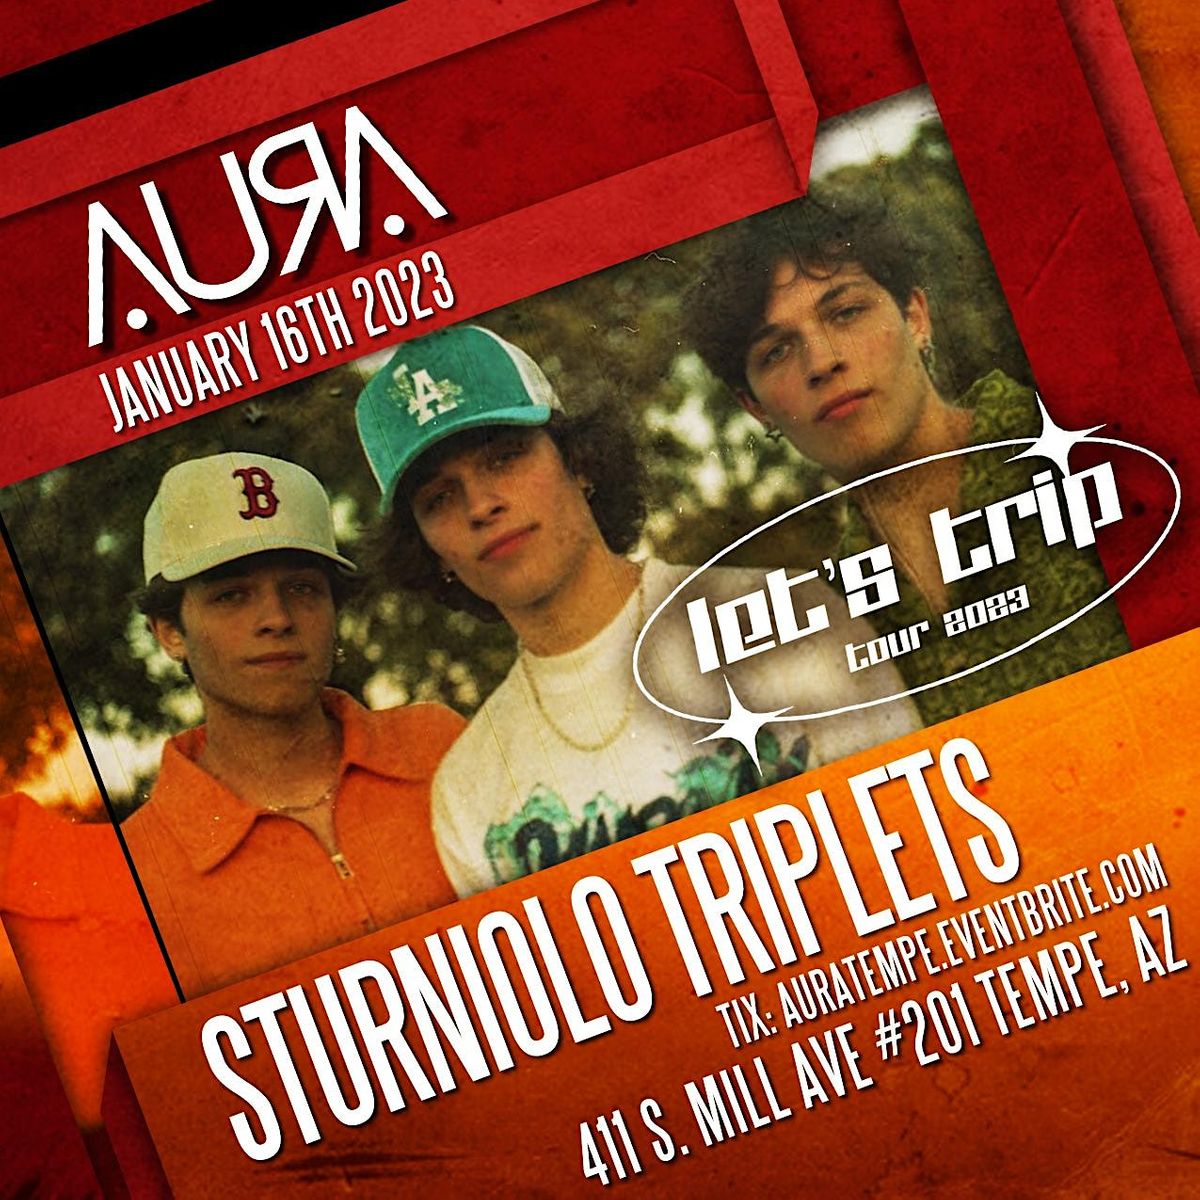 Sturniolo Triplets Lets Trip Tour, AURA, Tempe, 16 January 2023